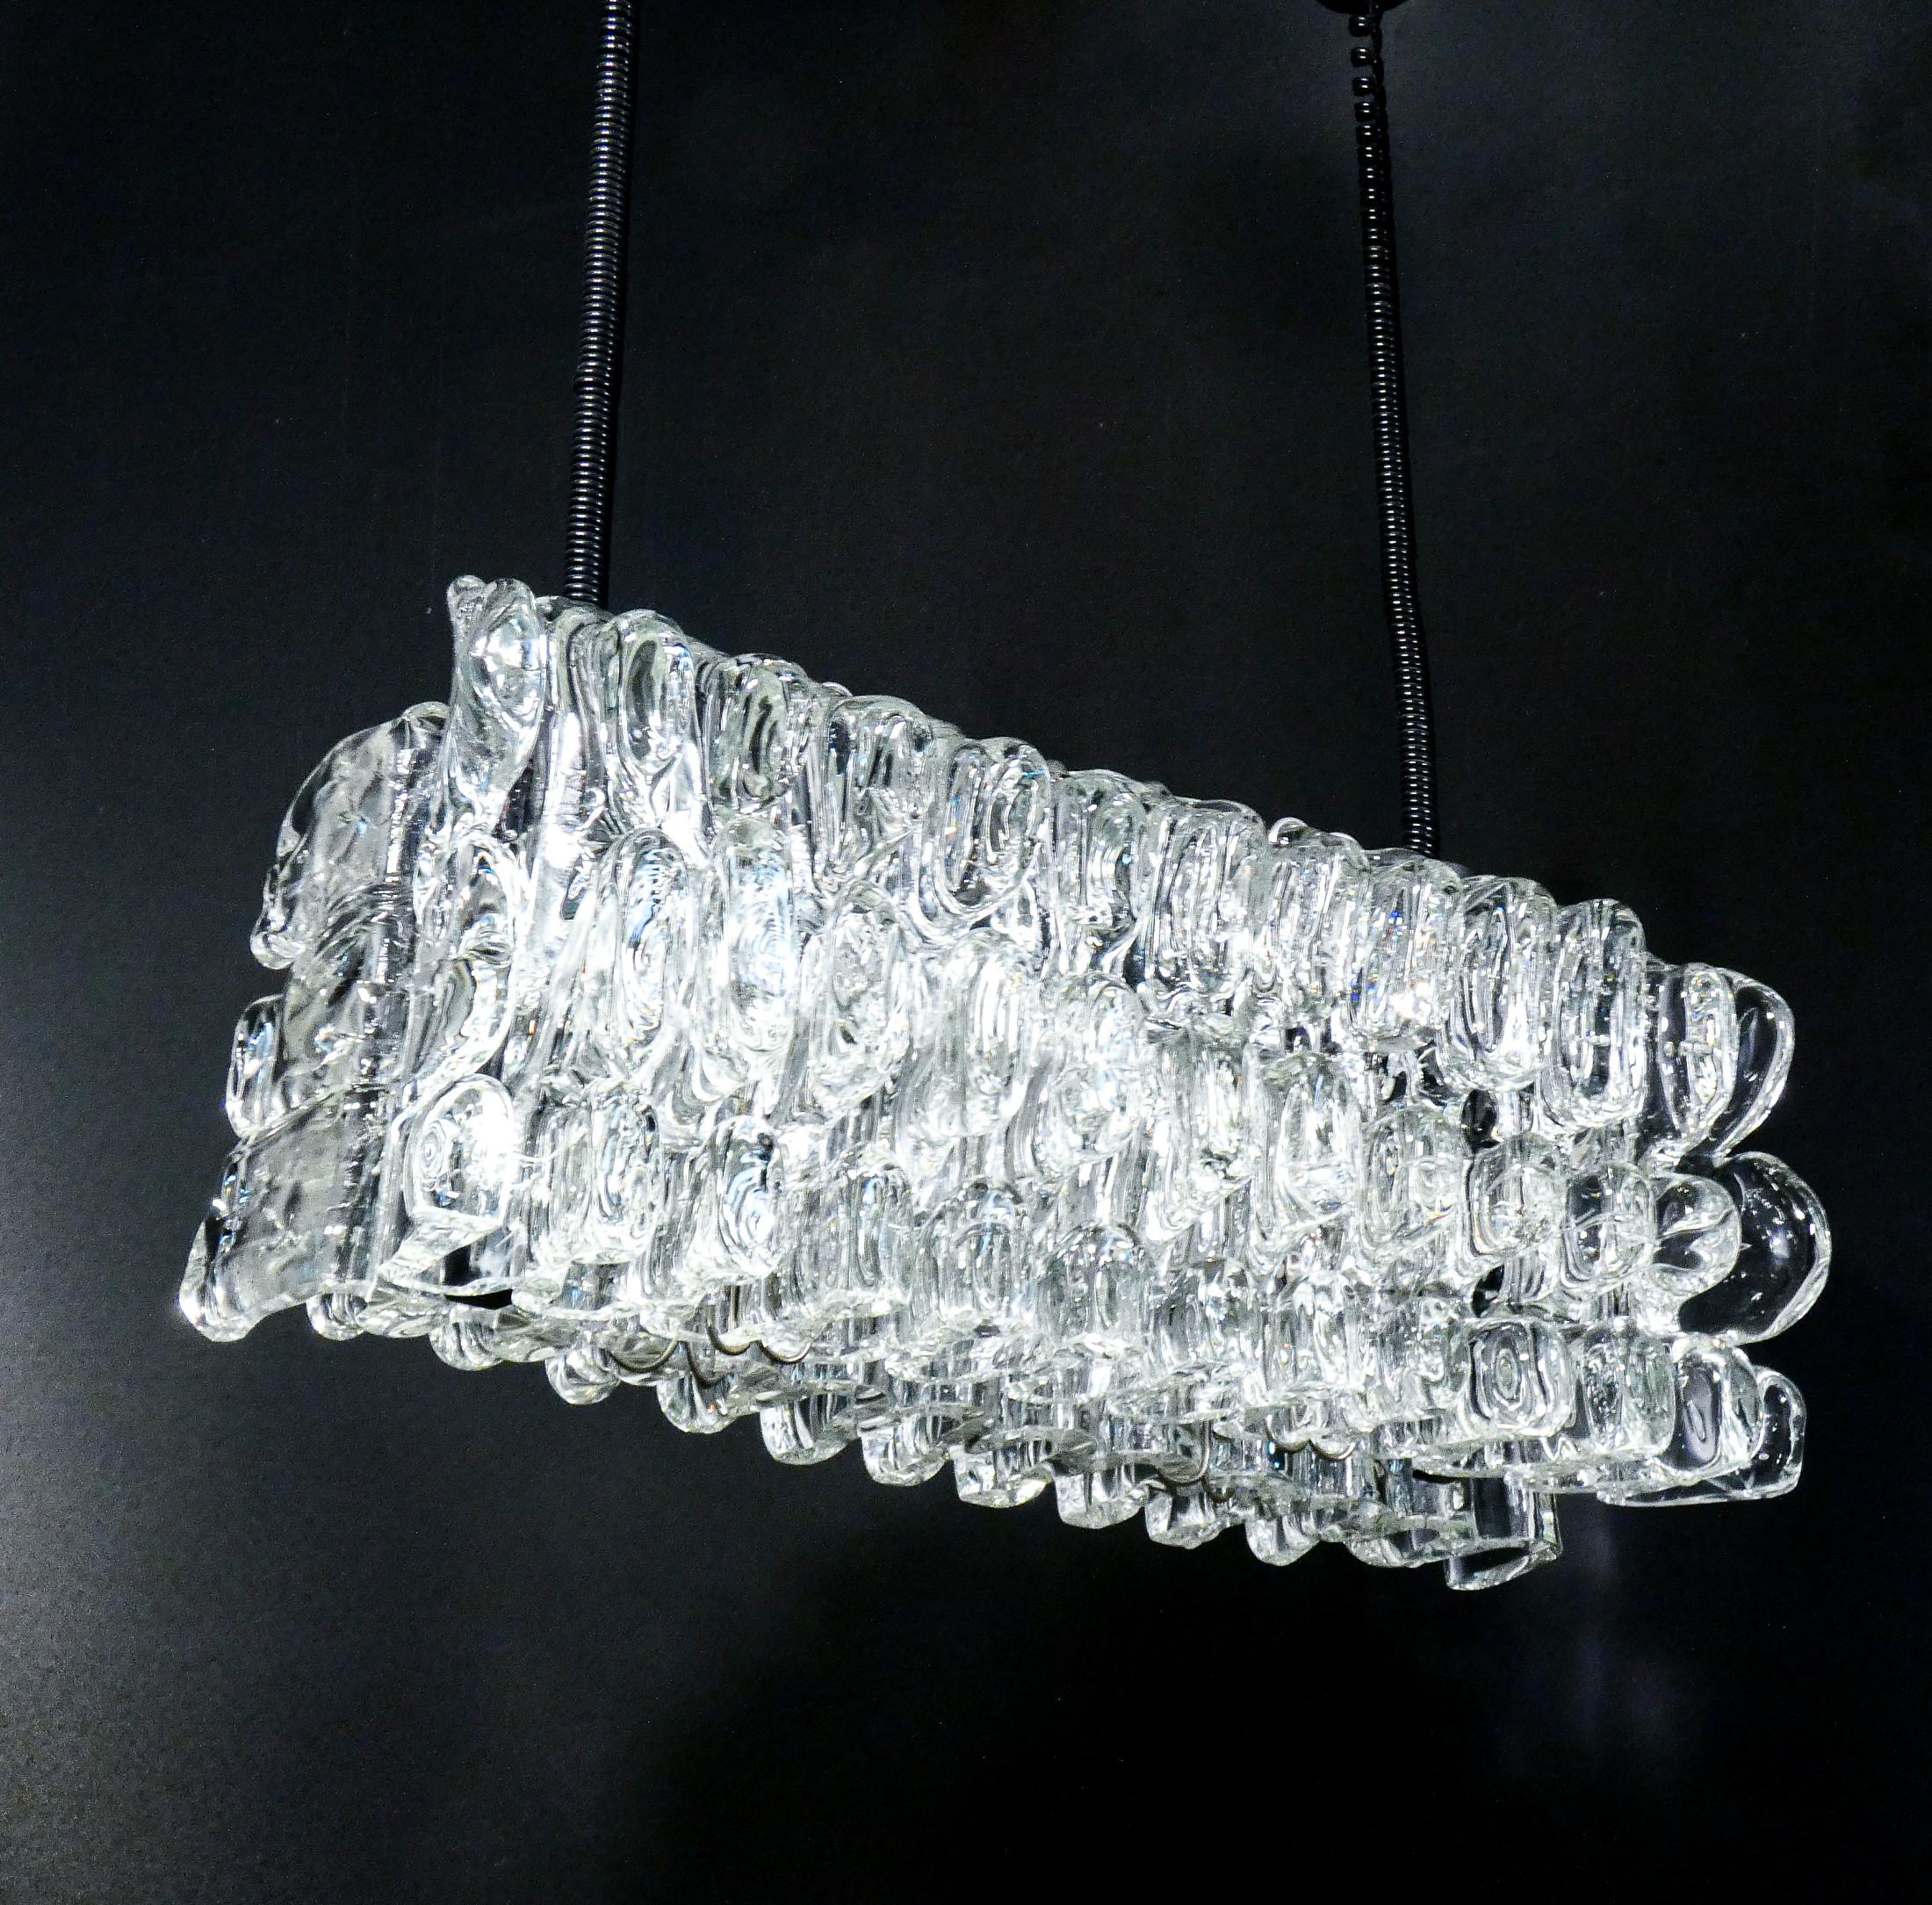 Lustre
conception F.lli TOSO,
avec éléments de diffusion
en verre soufflé transparent
de Murano.
Italie, vers 1970

ORIGINE
Italie

PÉRIODE
1970 ca.

CONCEPTEUR
F.lli TOSO

MATÉRIAUX
Cadre métallique, éléments diffuseurs en verre soufflé